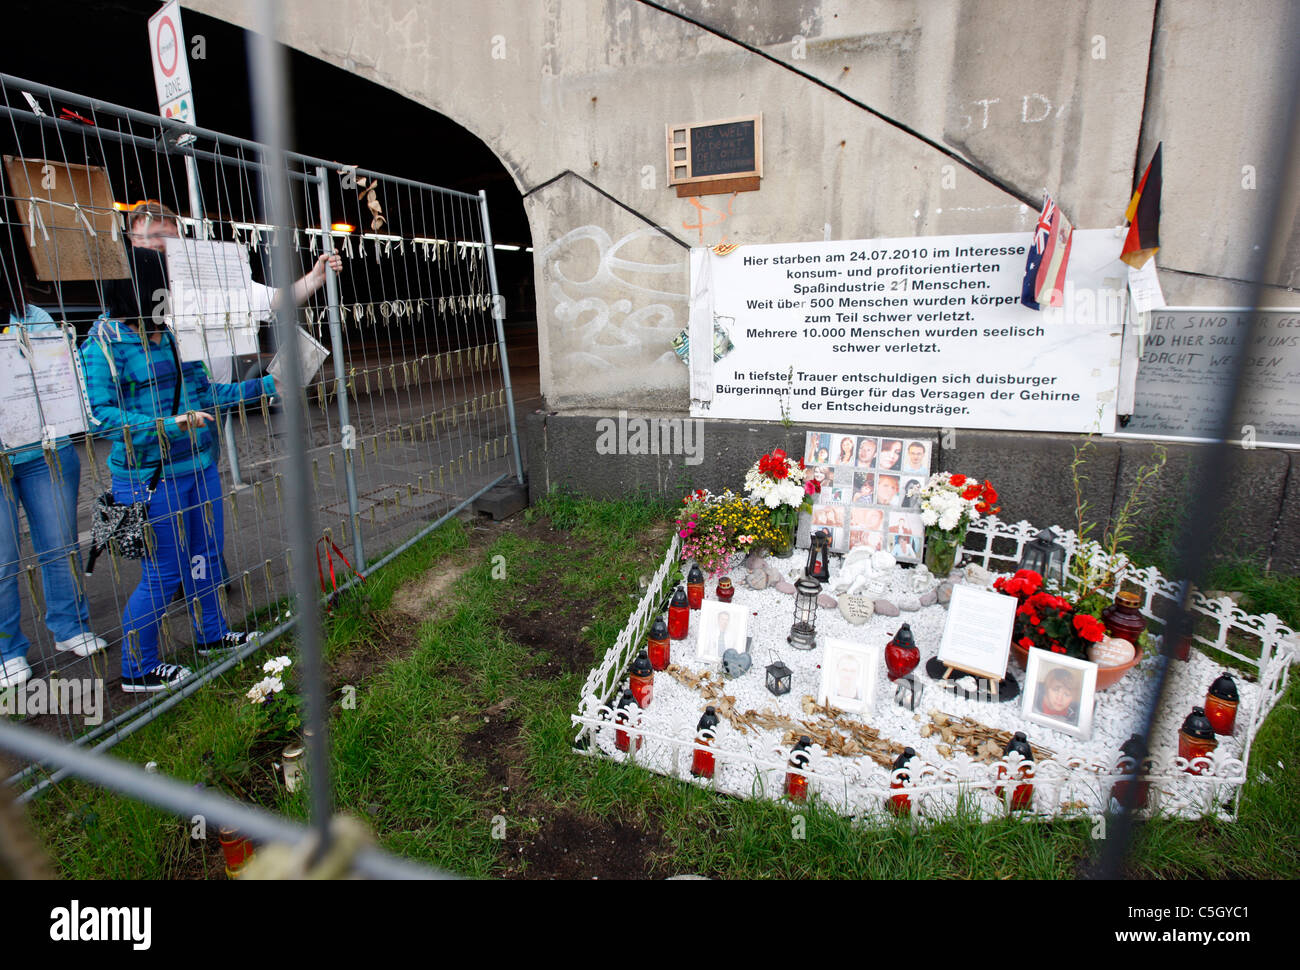 L'emplacement de l'événement 2010 Loveparade à Duisburg, en Allemagne. 21 personnes ont été tuées dans une panique de masse. Aujourd'hui une sorte de pèlerinage. Banque D'Images